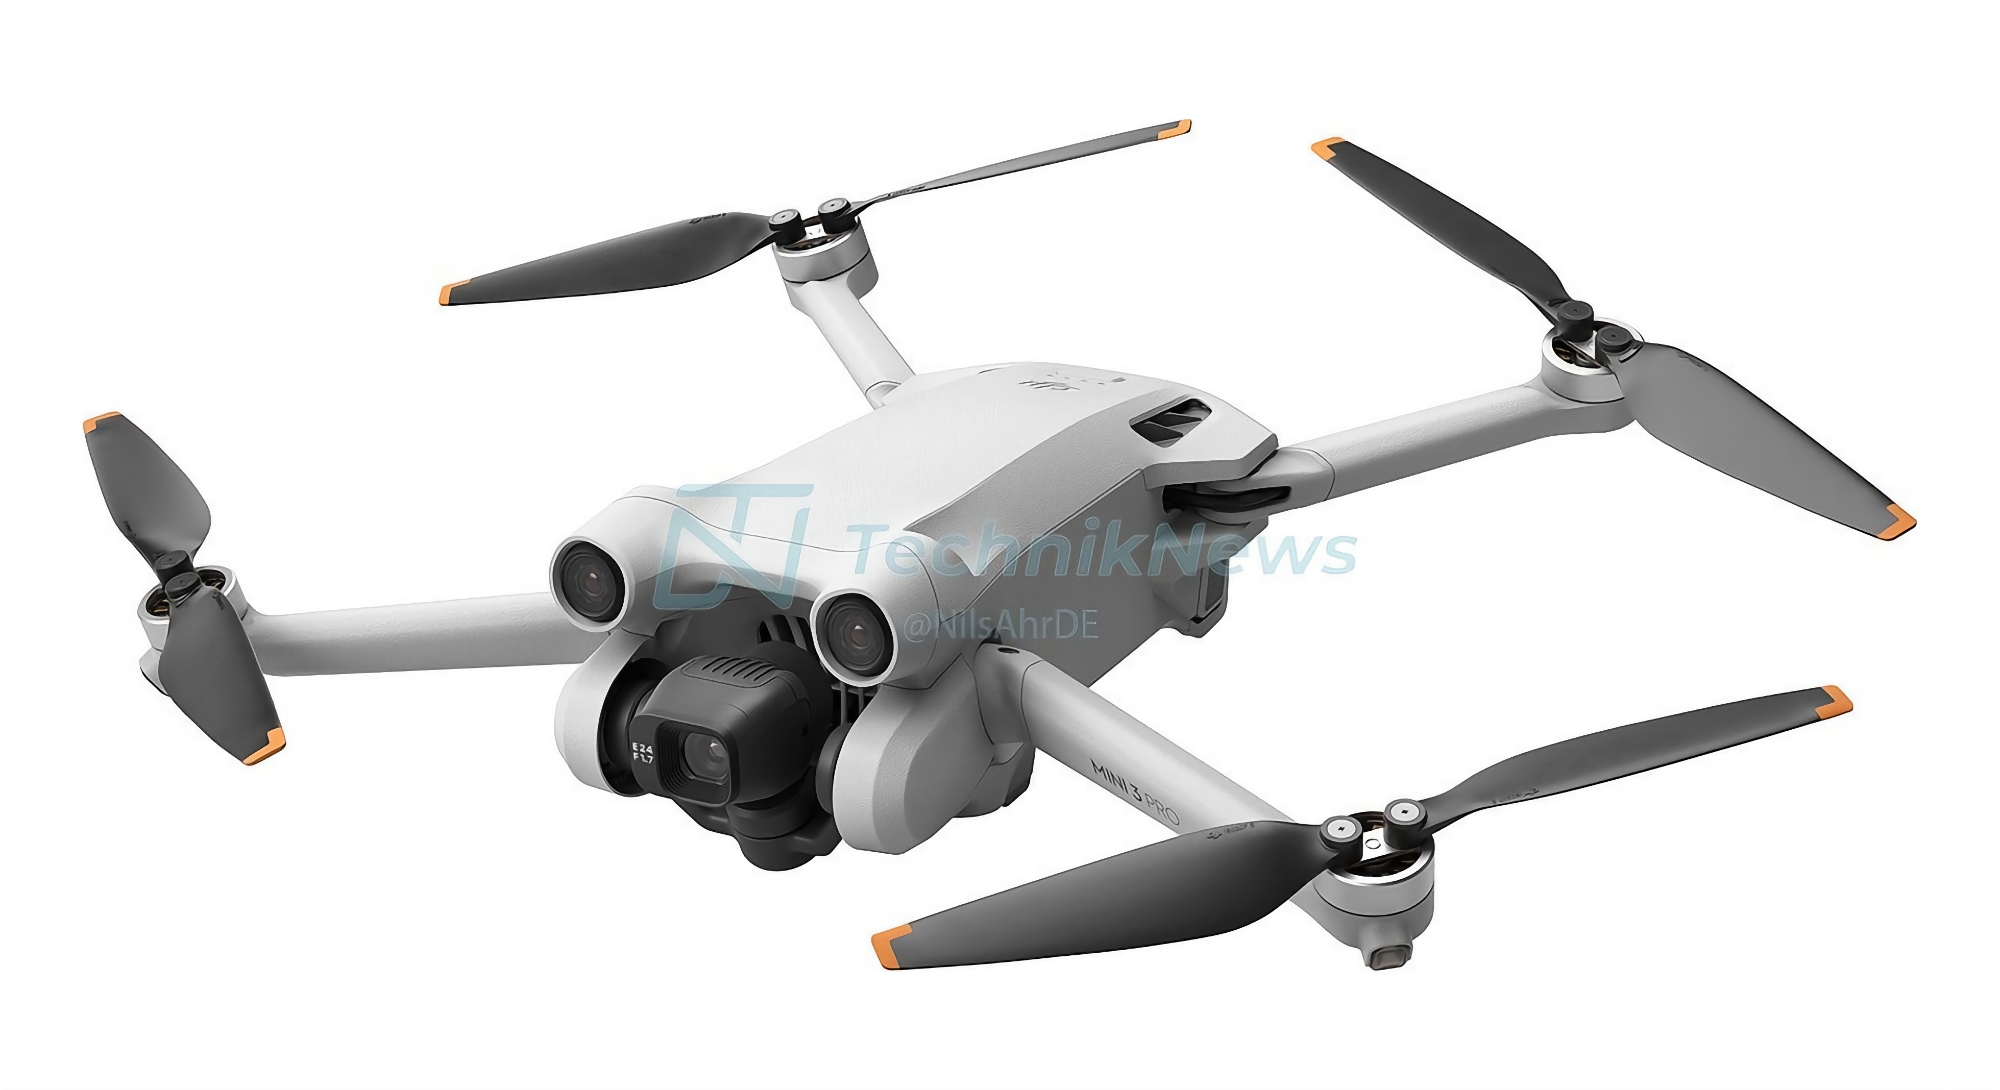 Ecco come sarà il DJI Mini 3 Pro: il nuovo drone dell'azienda con fotocamera da 48 MP e fino a 47 minuti di autonomia